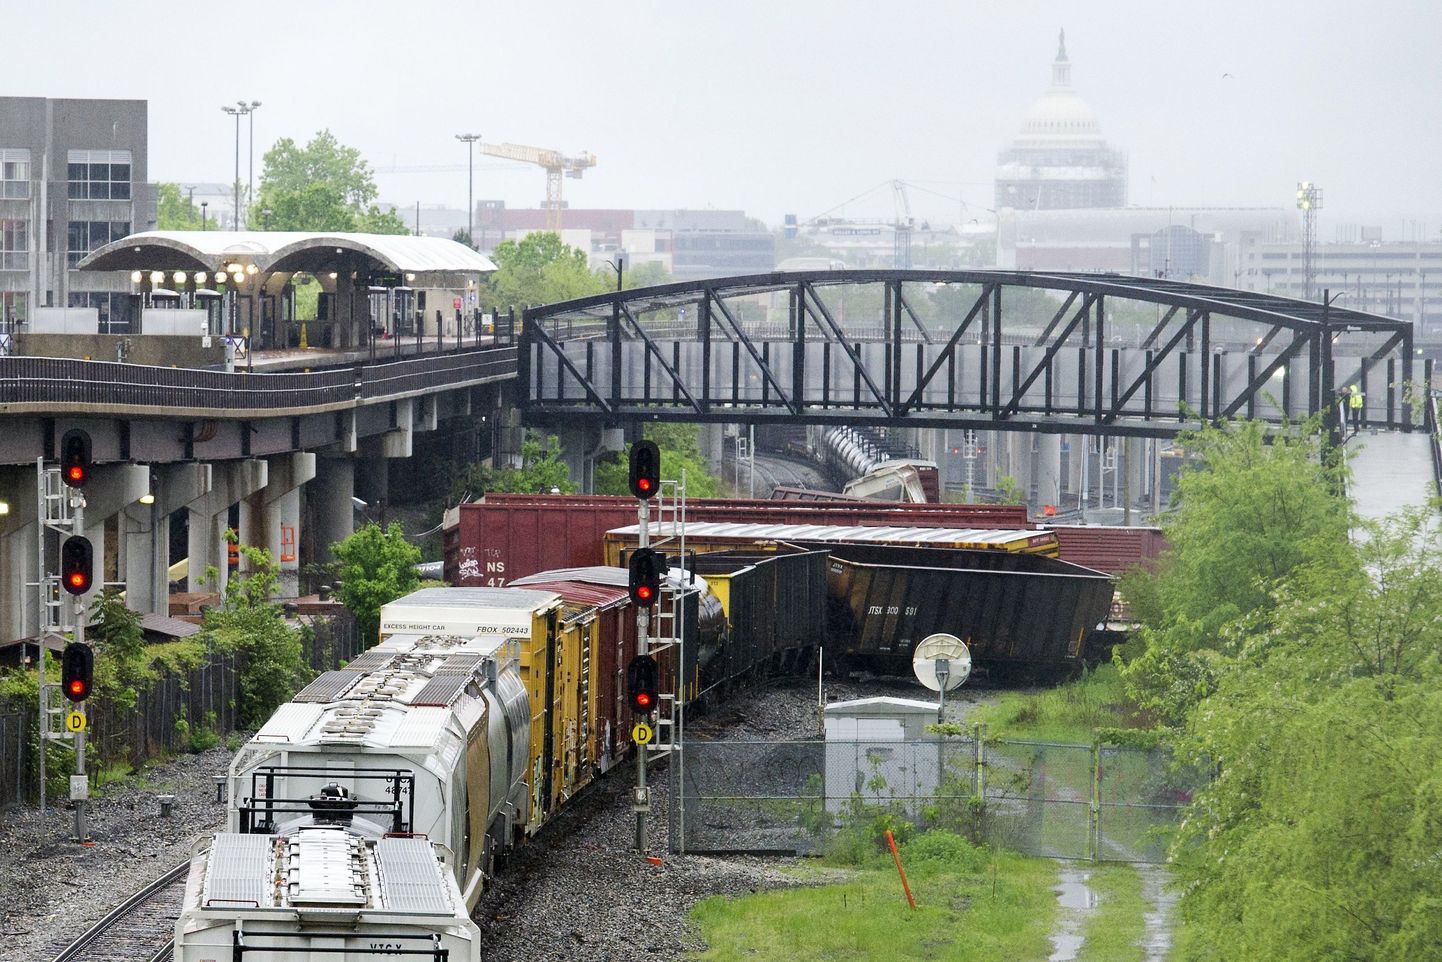 Washingtonis sõitis rööbastelt maha mürgiseid kemikaale vedanud rong.